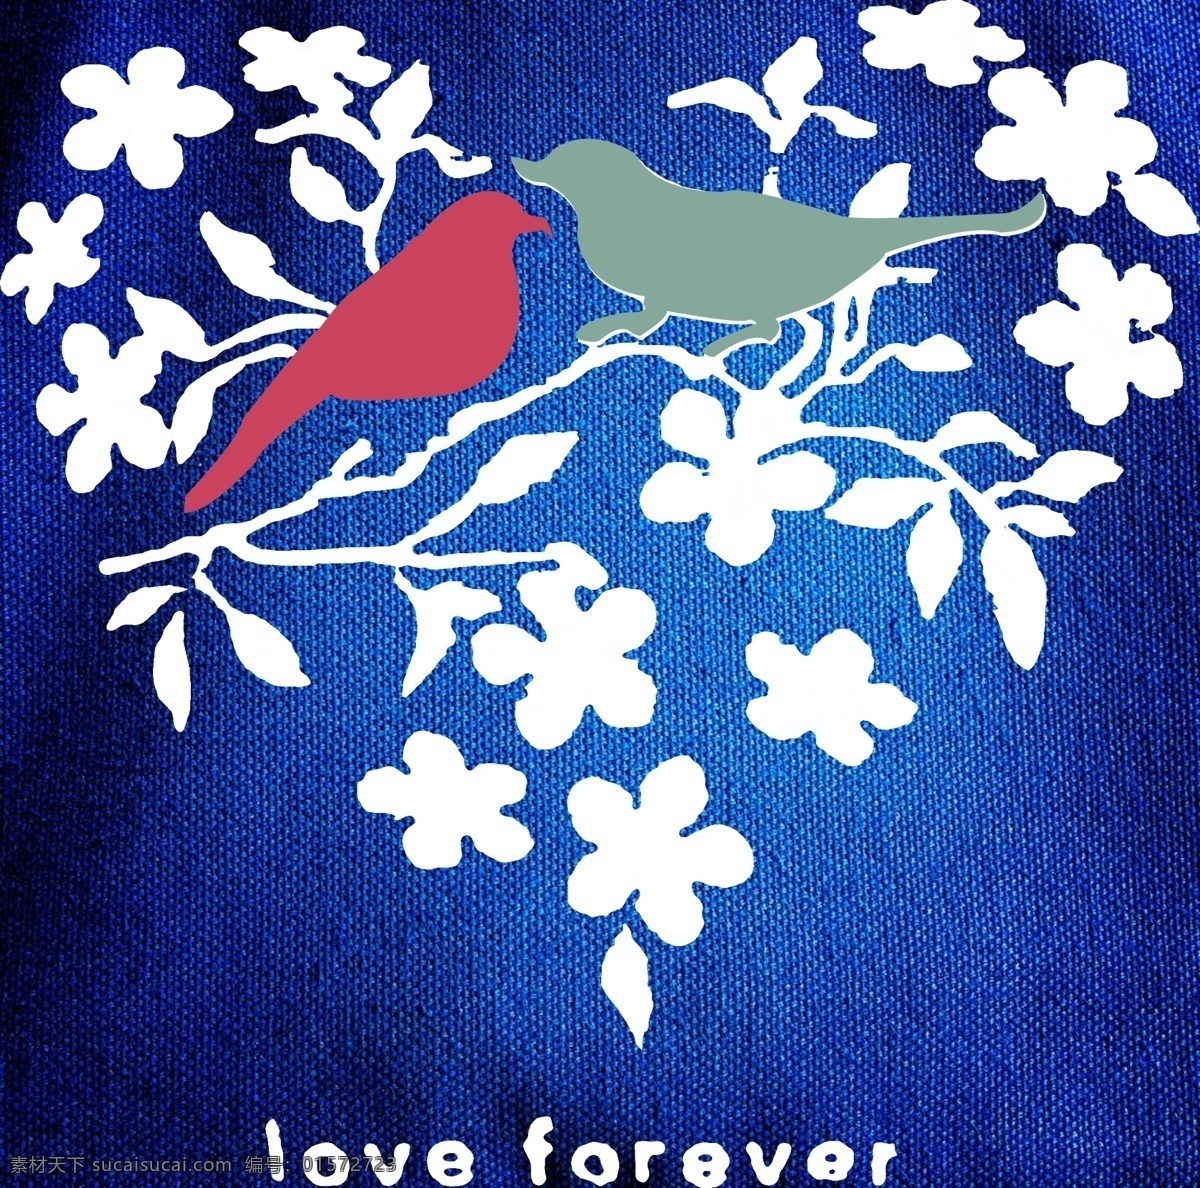 爱情鸟 蓝色 心型叶子 心型 叶子 爱情 鸟 分层